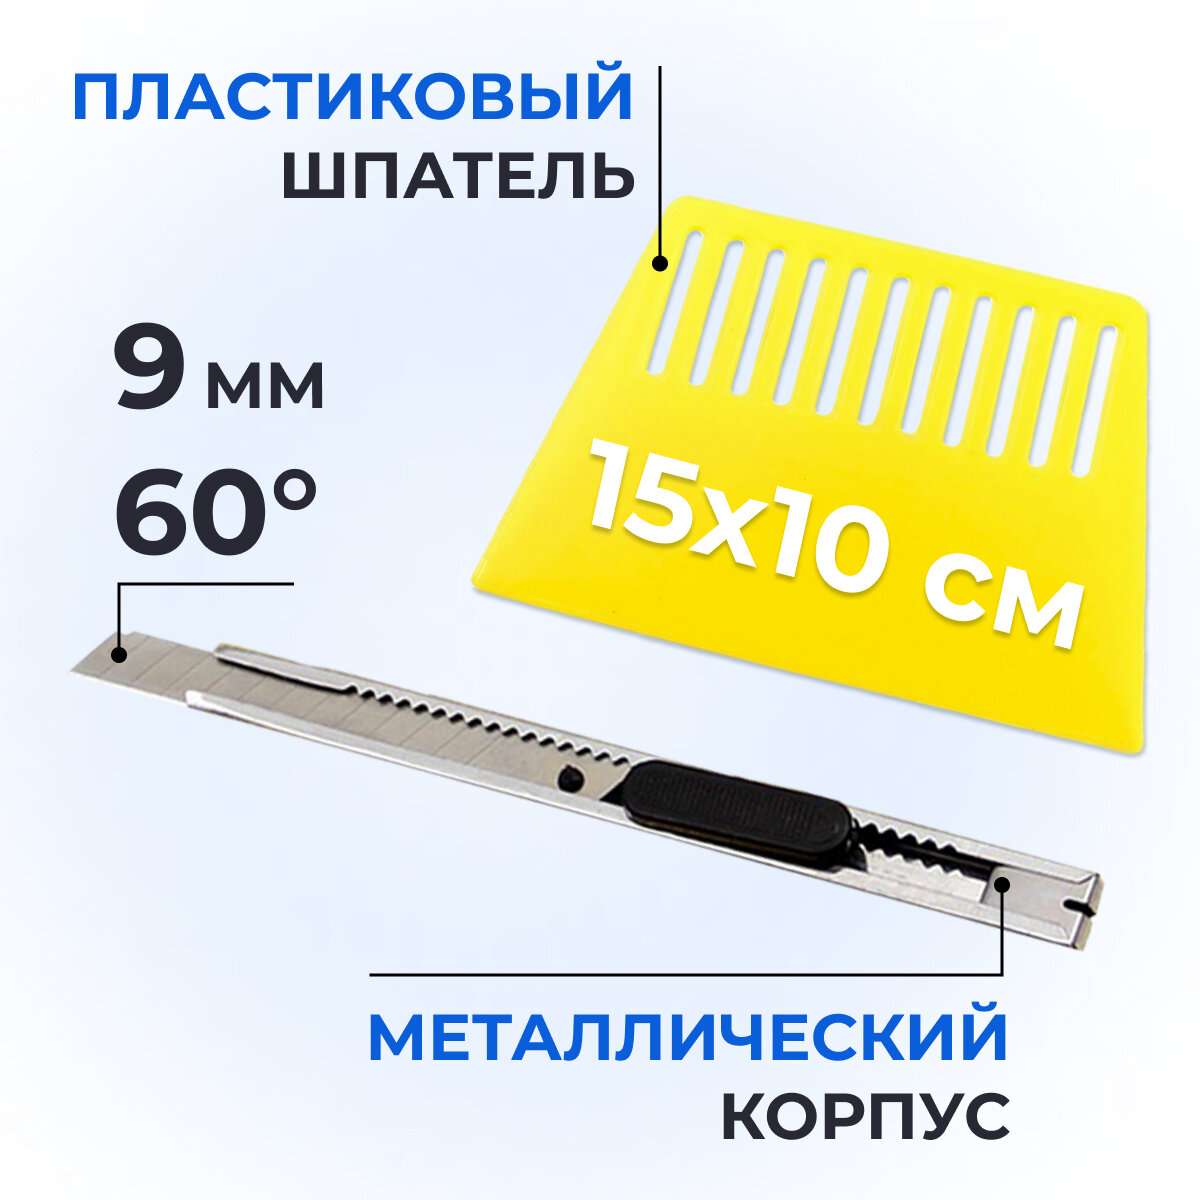 Пластиковый шпатель для поклейки обоев (15x10 см) + нож для пленки 9мм угол 60гр